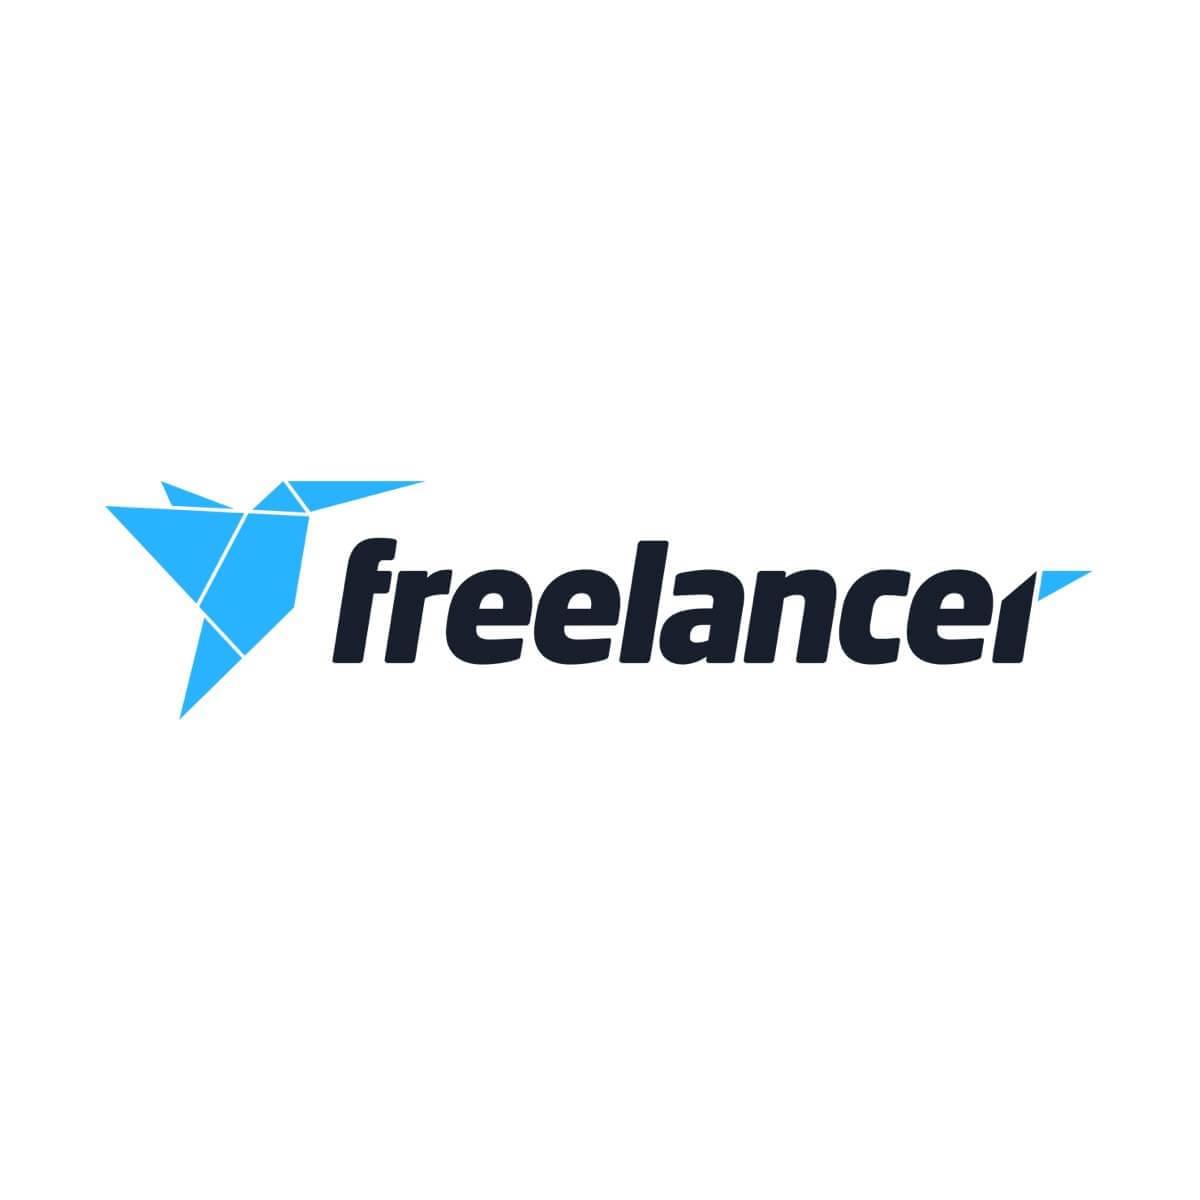 tr.freelancer.com